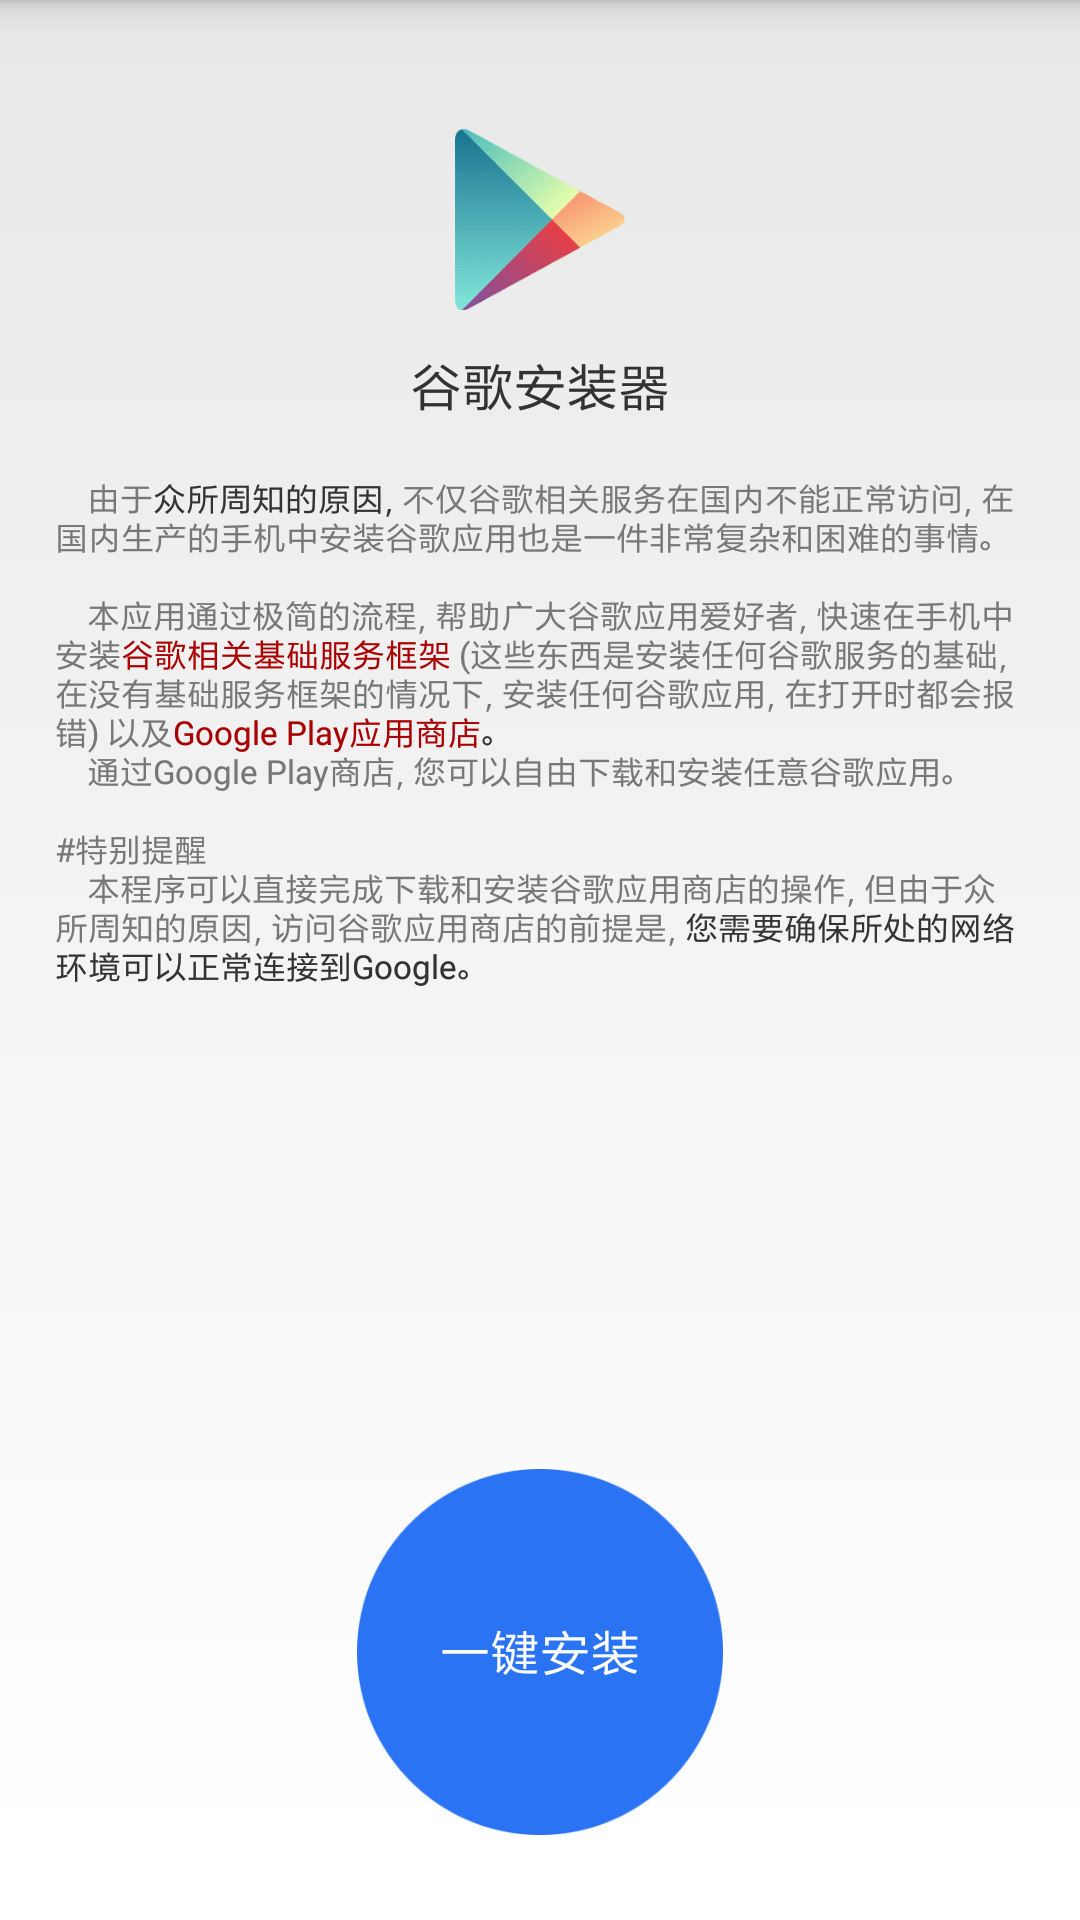 آموزش نصب برنامه های گوگل روی رام چین گوشی های شیائومی